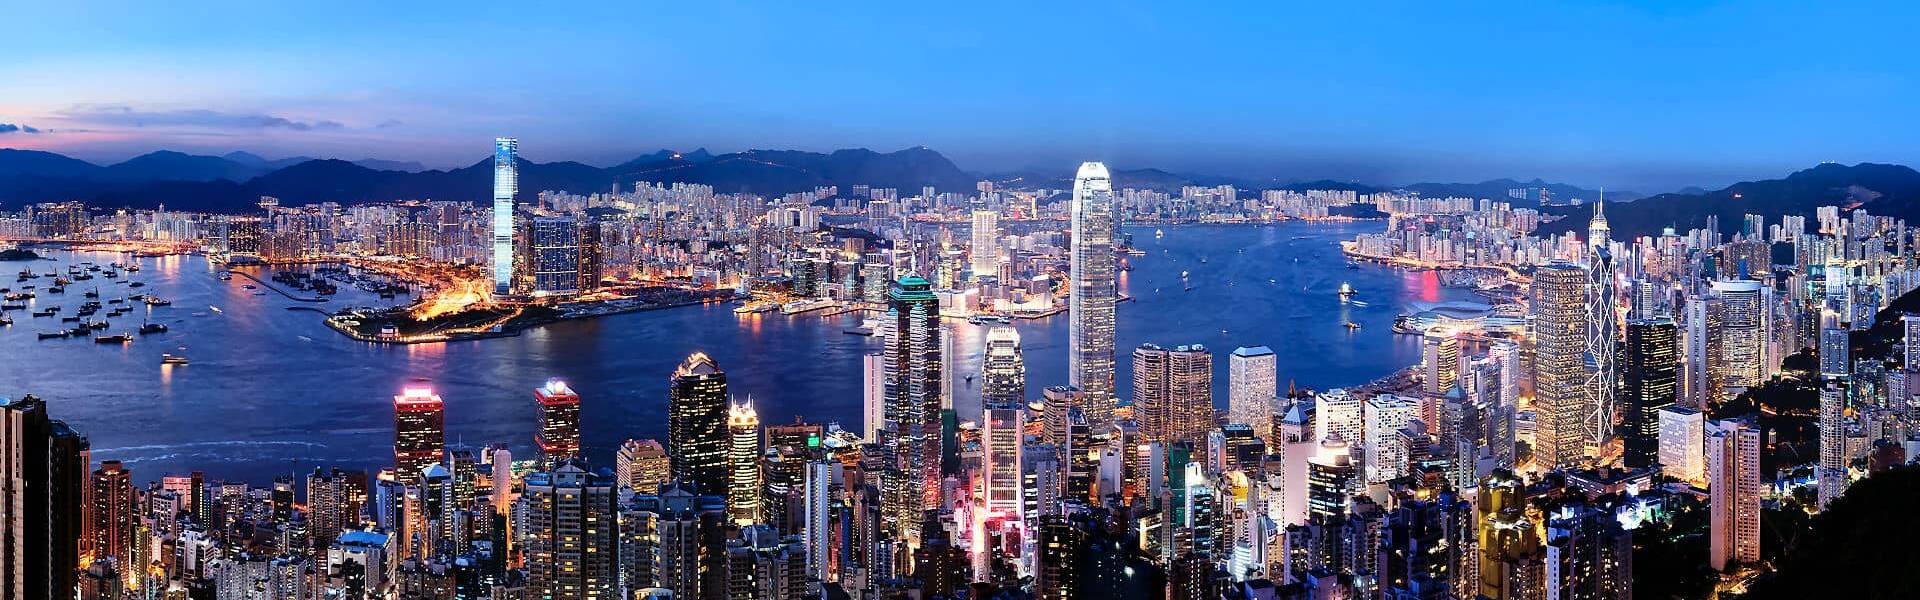 Erleben Sie im Urlaub die faszinierende Metropole auf Ihrer Hongkong Reise kennen, Ob Städtereise oder eine Kombireise mit anderen Metropolen und Ländern